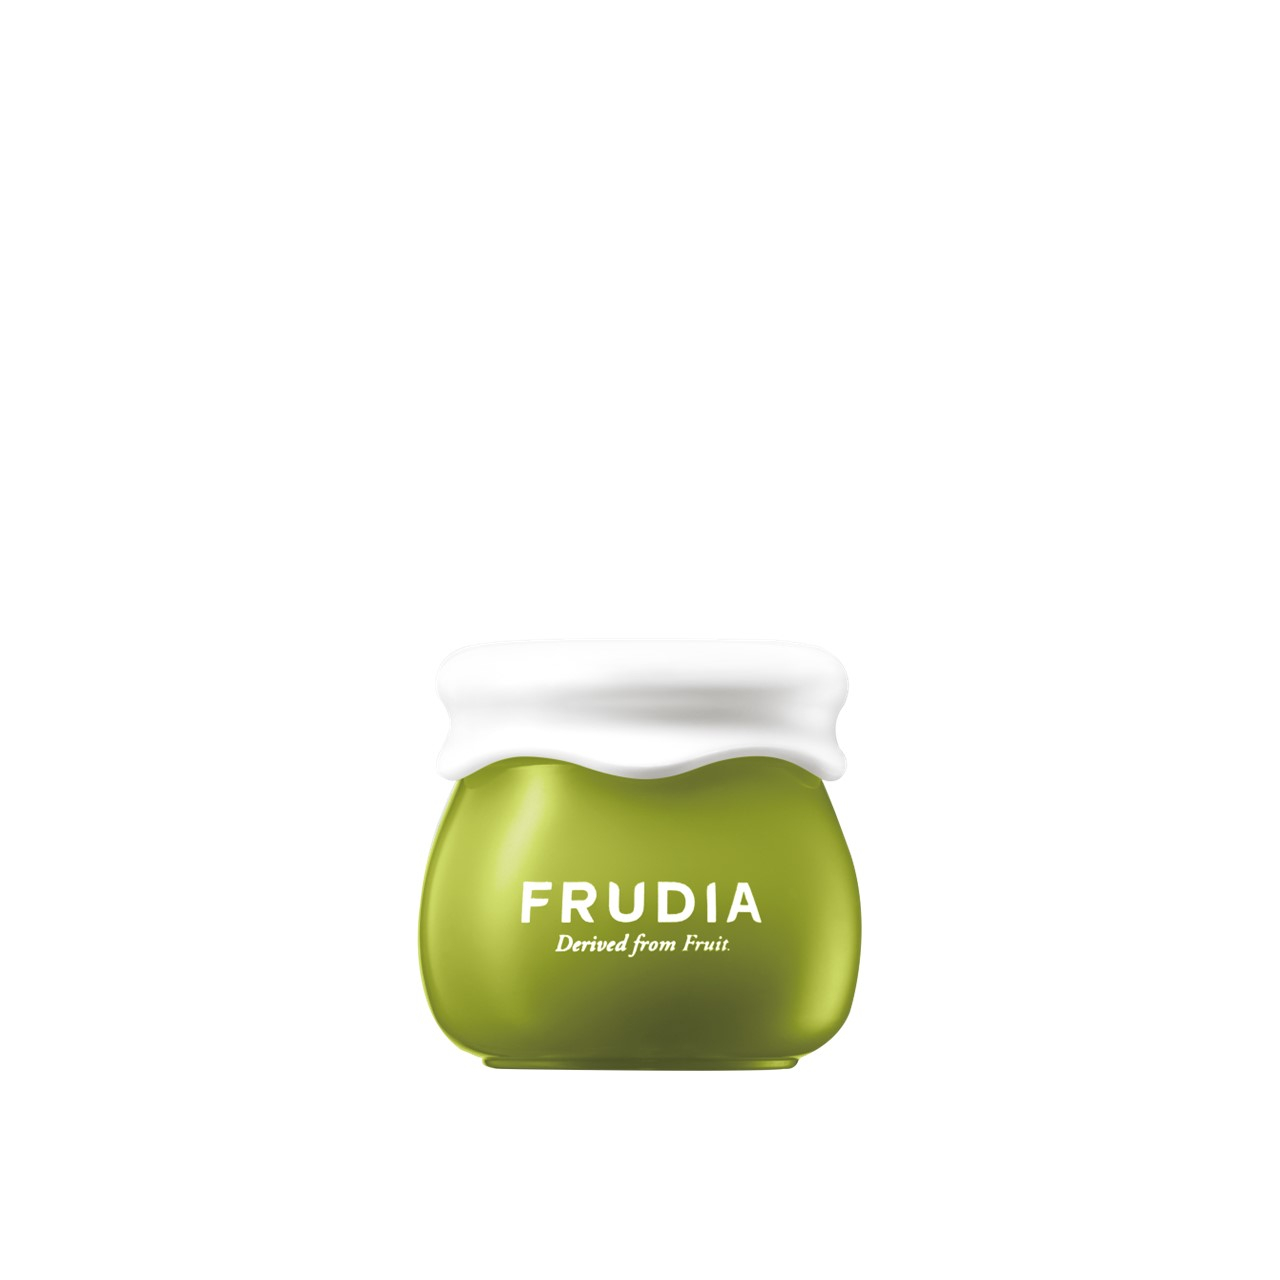 Frudia Avocado Relief Cream 10g (0.35 oz)